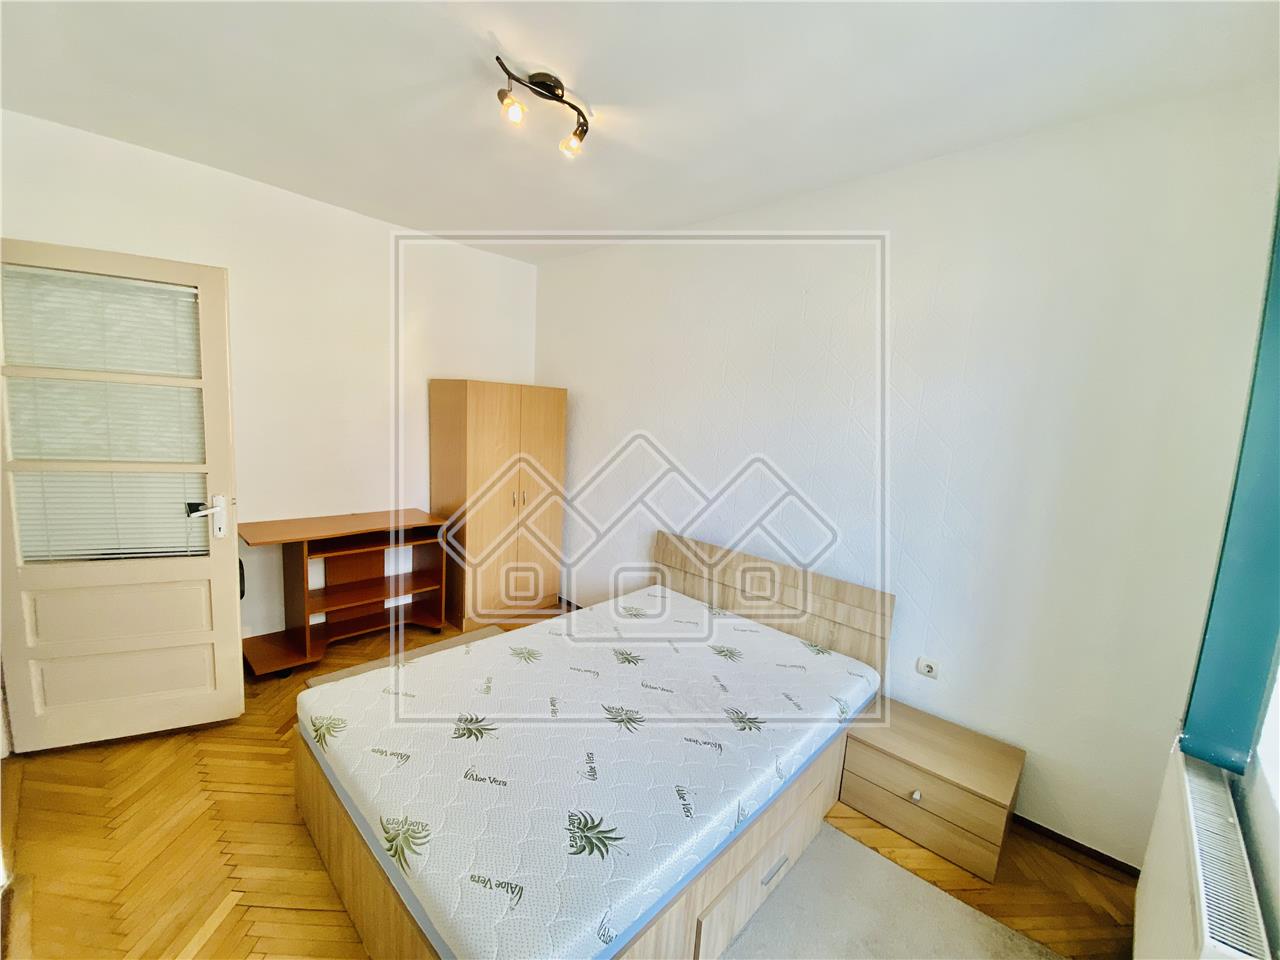 Wohnung zum Verkauf in Sibiu - 2 Zimmer und Balkon - Terezian Bereich